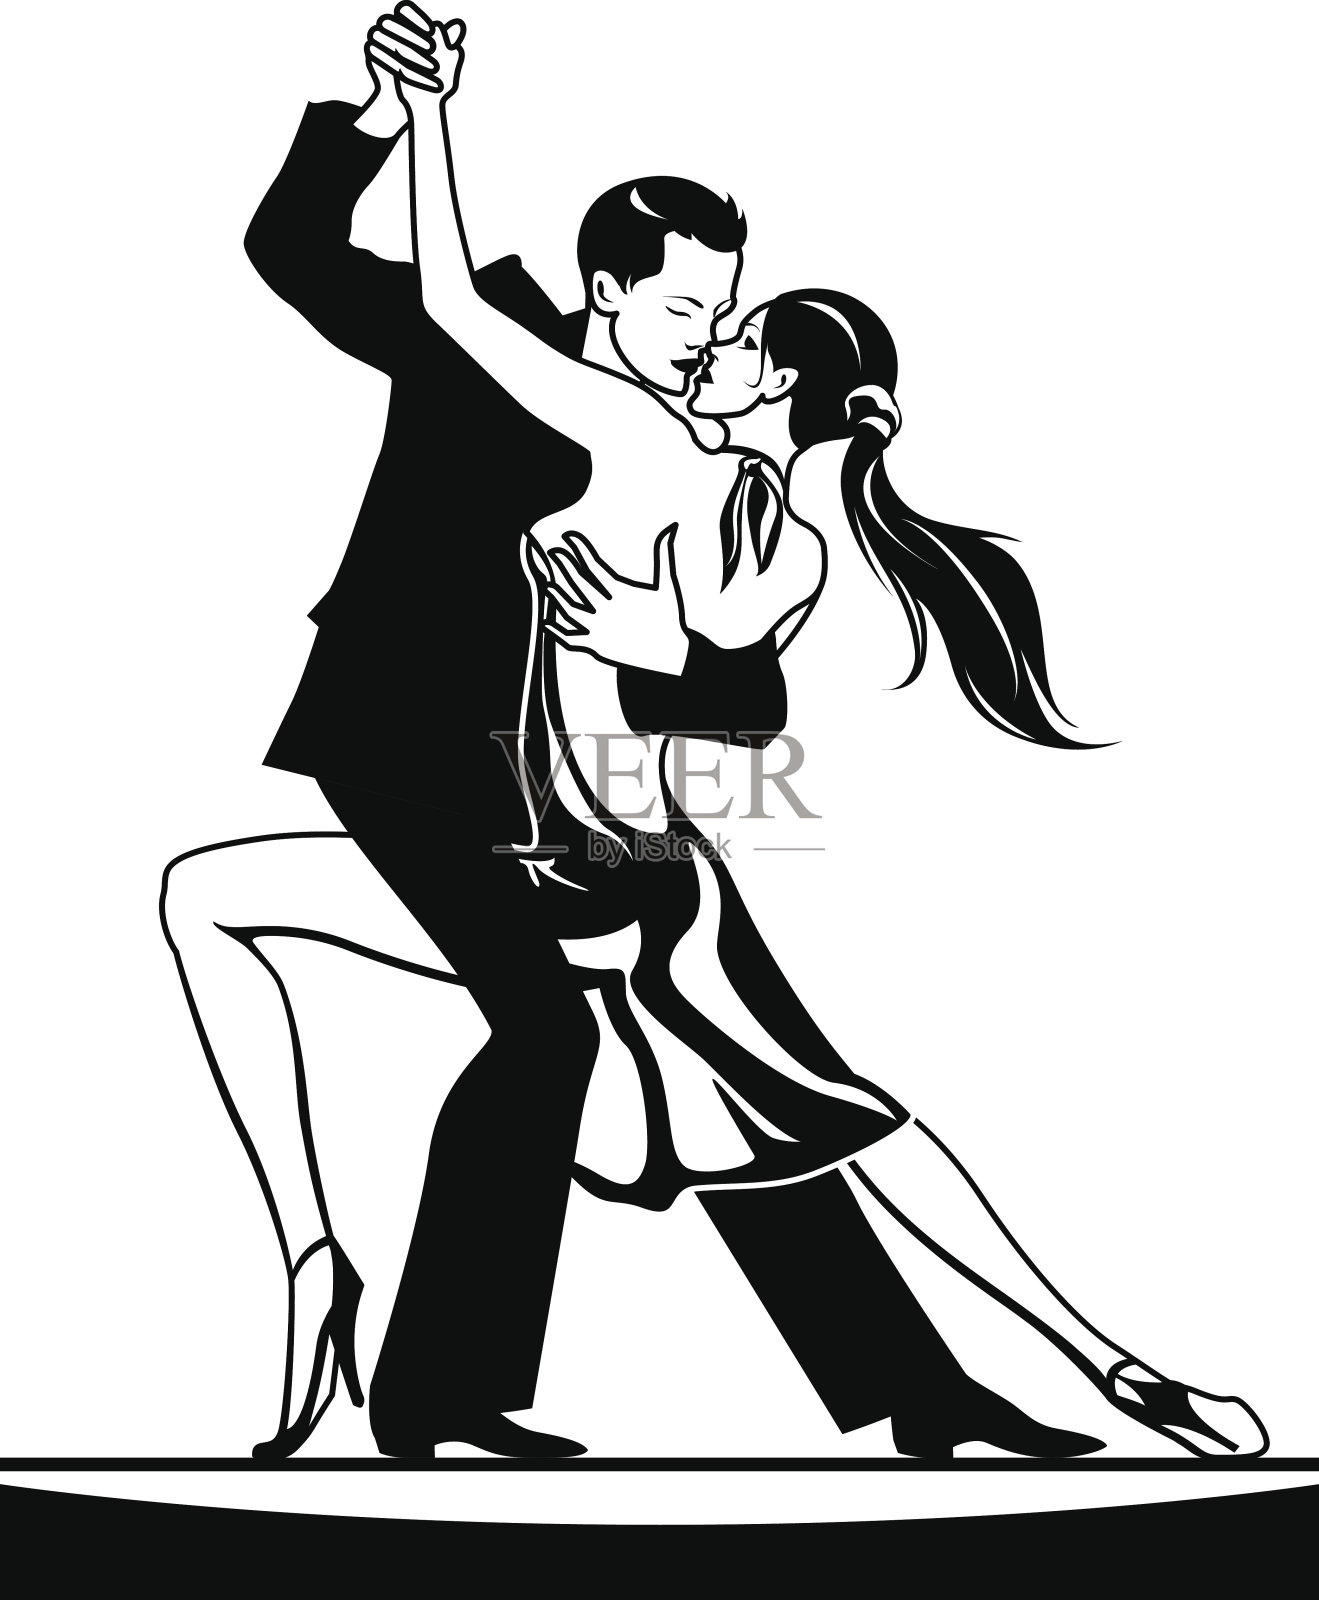 交际舞中的一对舞者插画图片素材